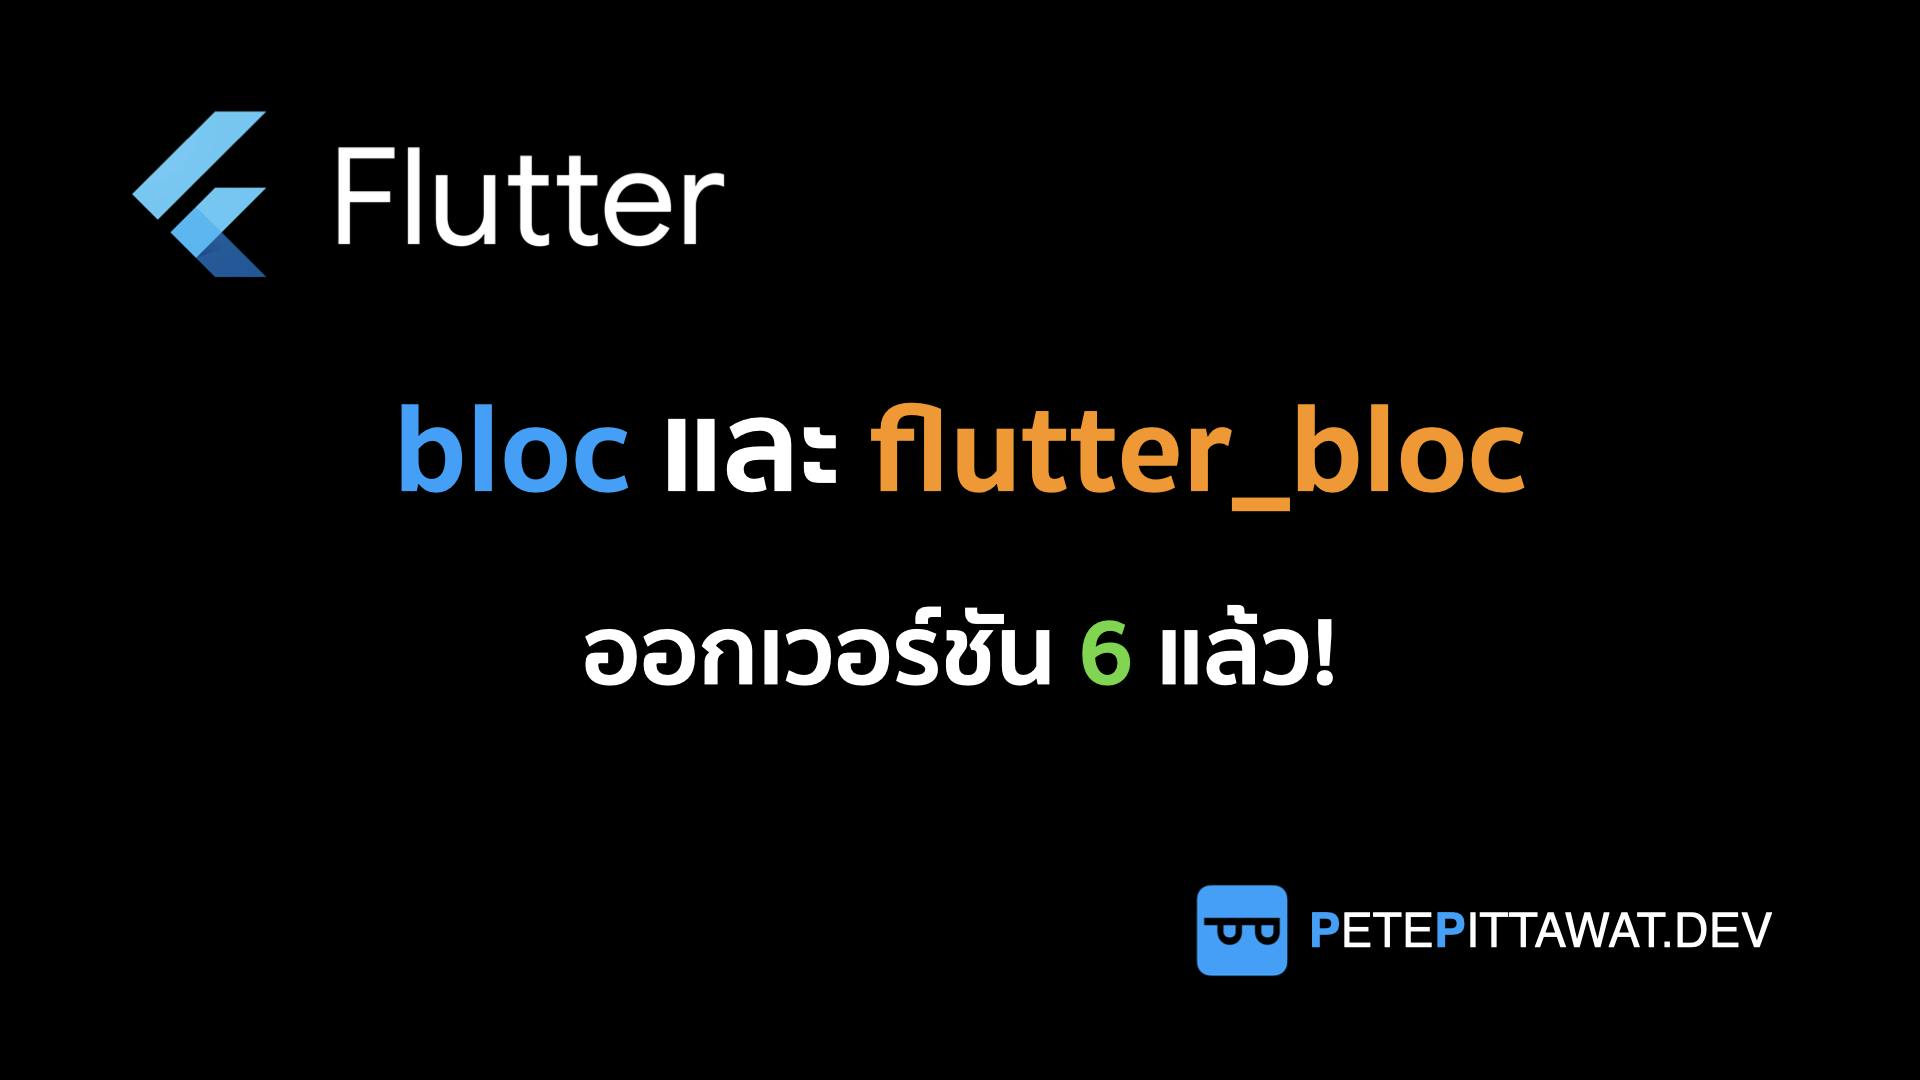 Cover Image for Flutter: bloc และ flutter_bloc v6 มาแล้ว!